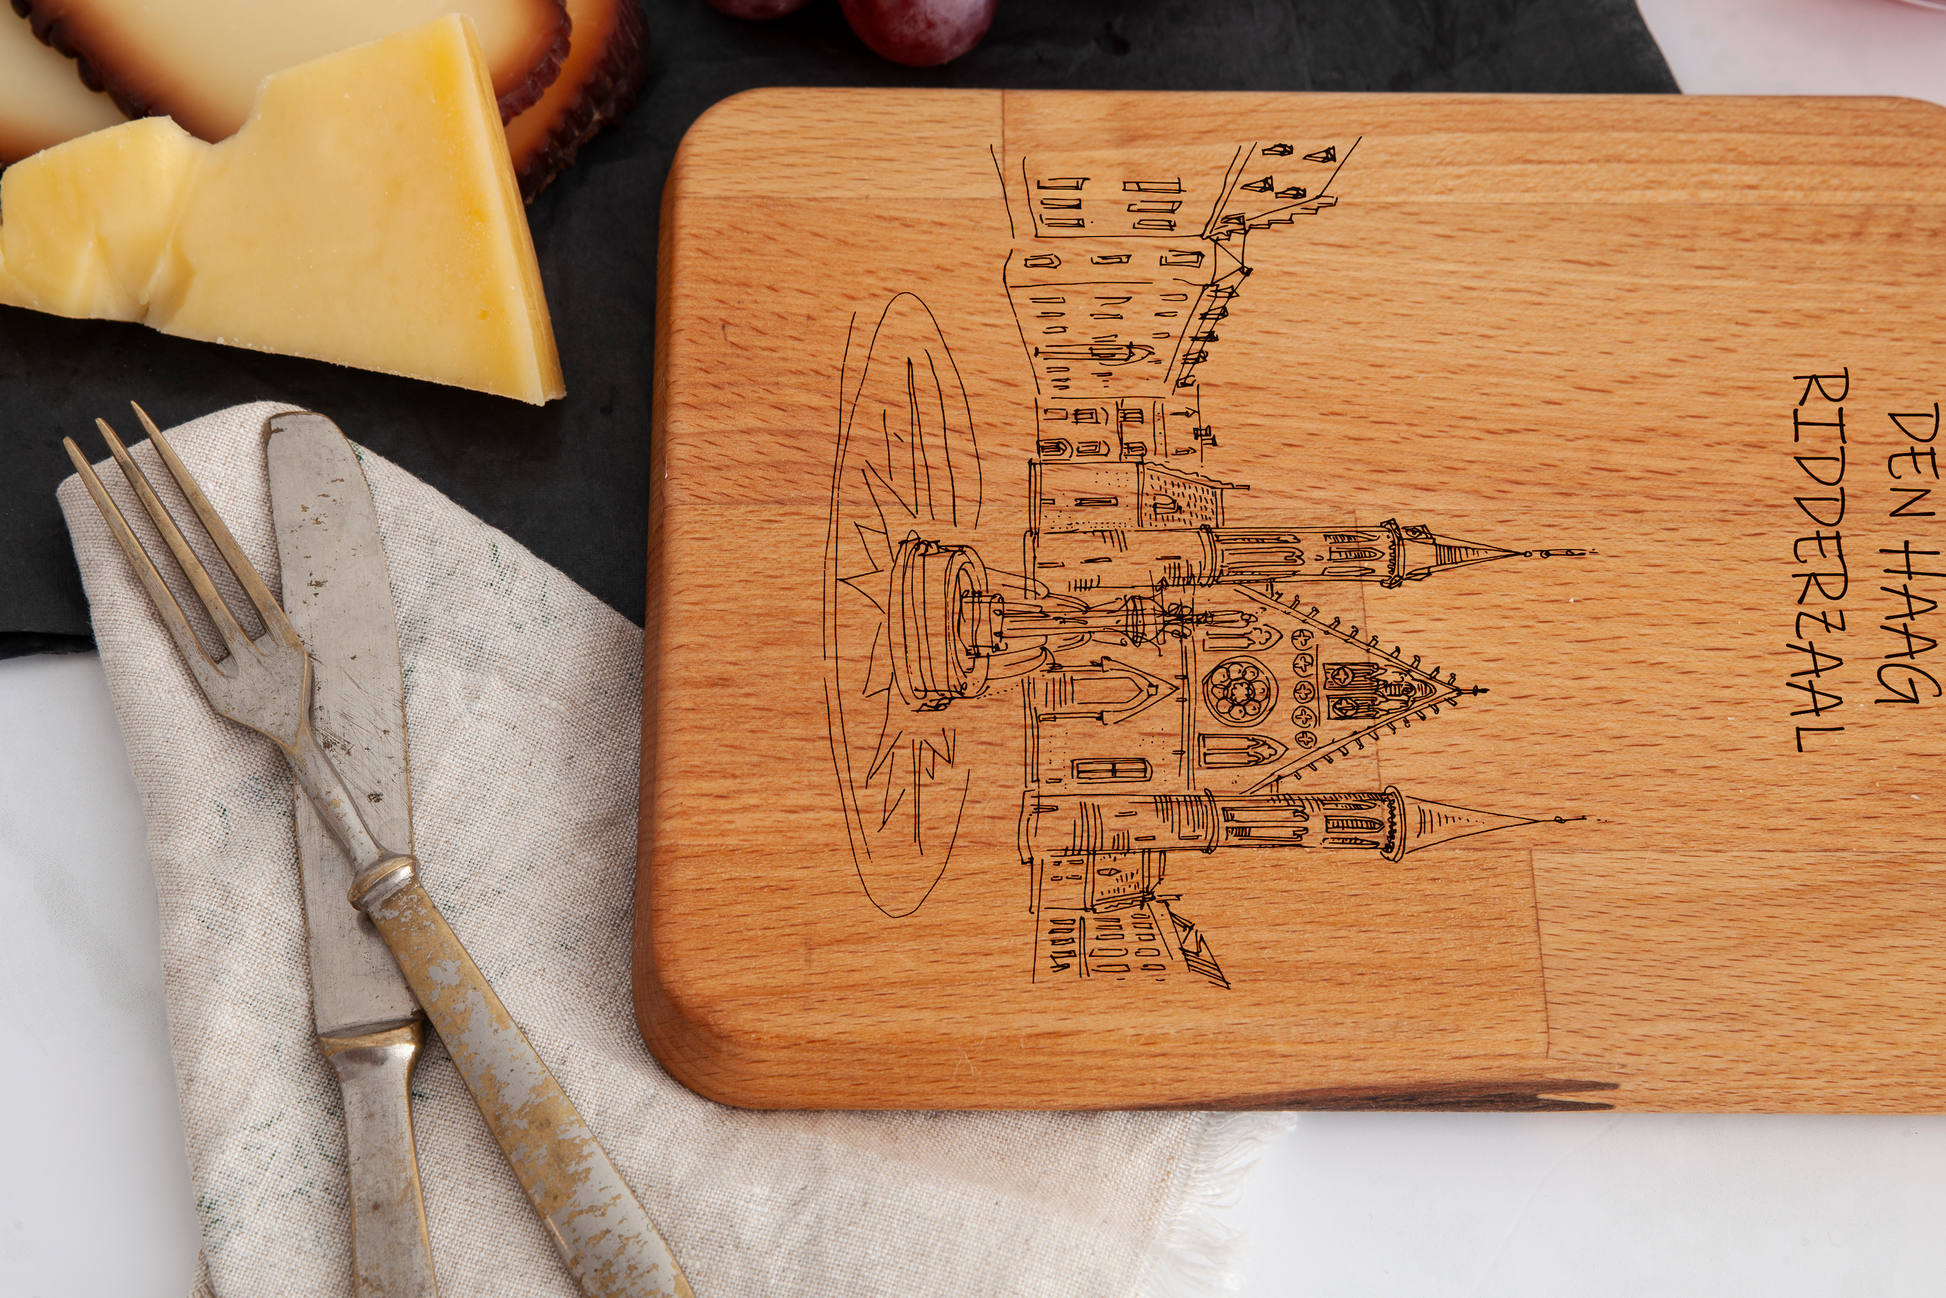 Den Haag, Ridderzaal, cheese board, wood grain